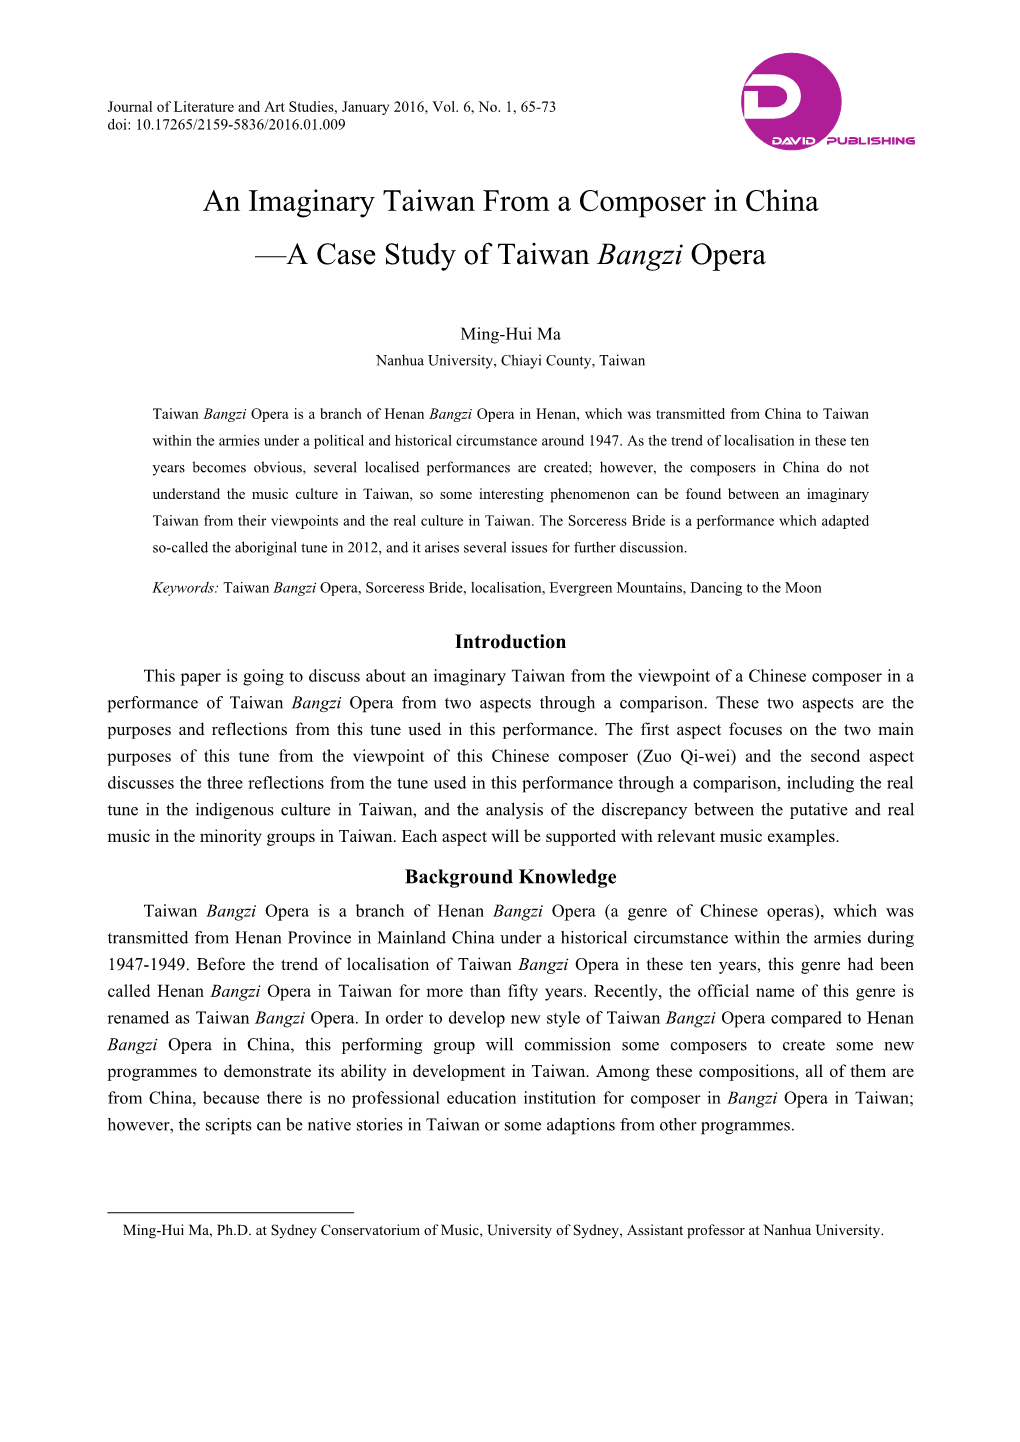 A Case Study of Taiwan Bangzi Opera